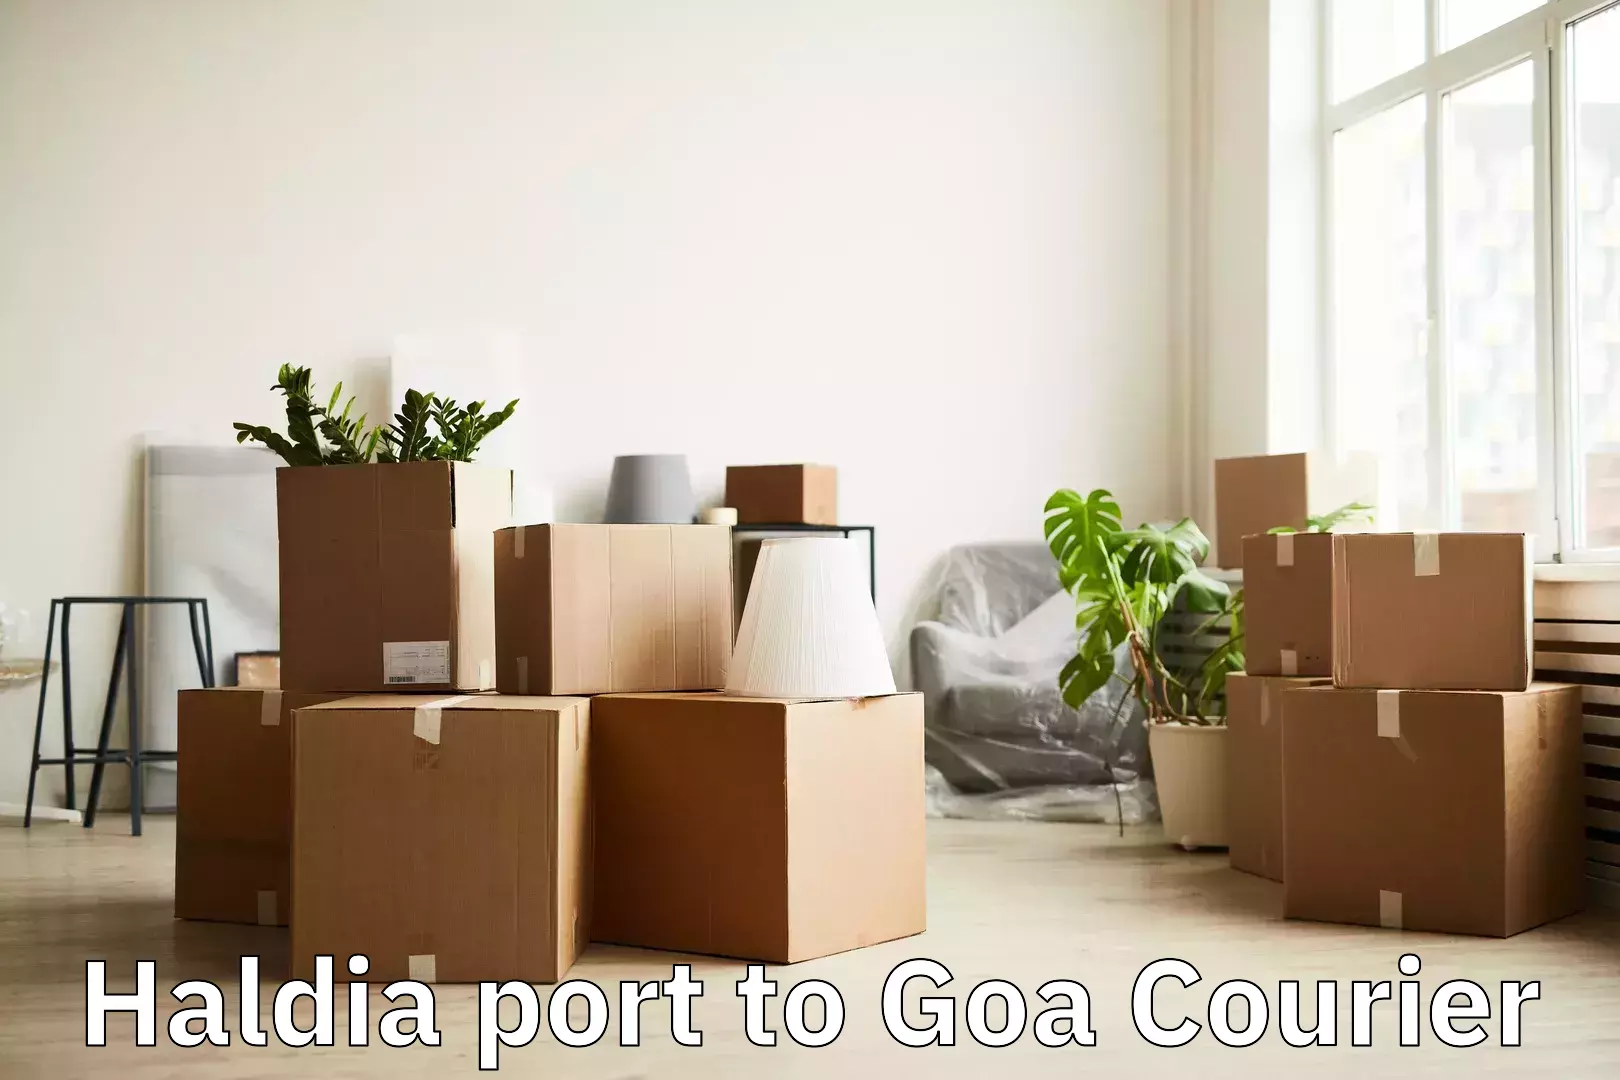 Premium luggage courier Haldia port to Goa